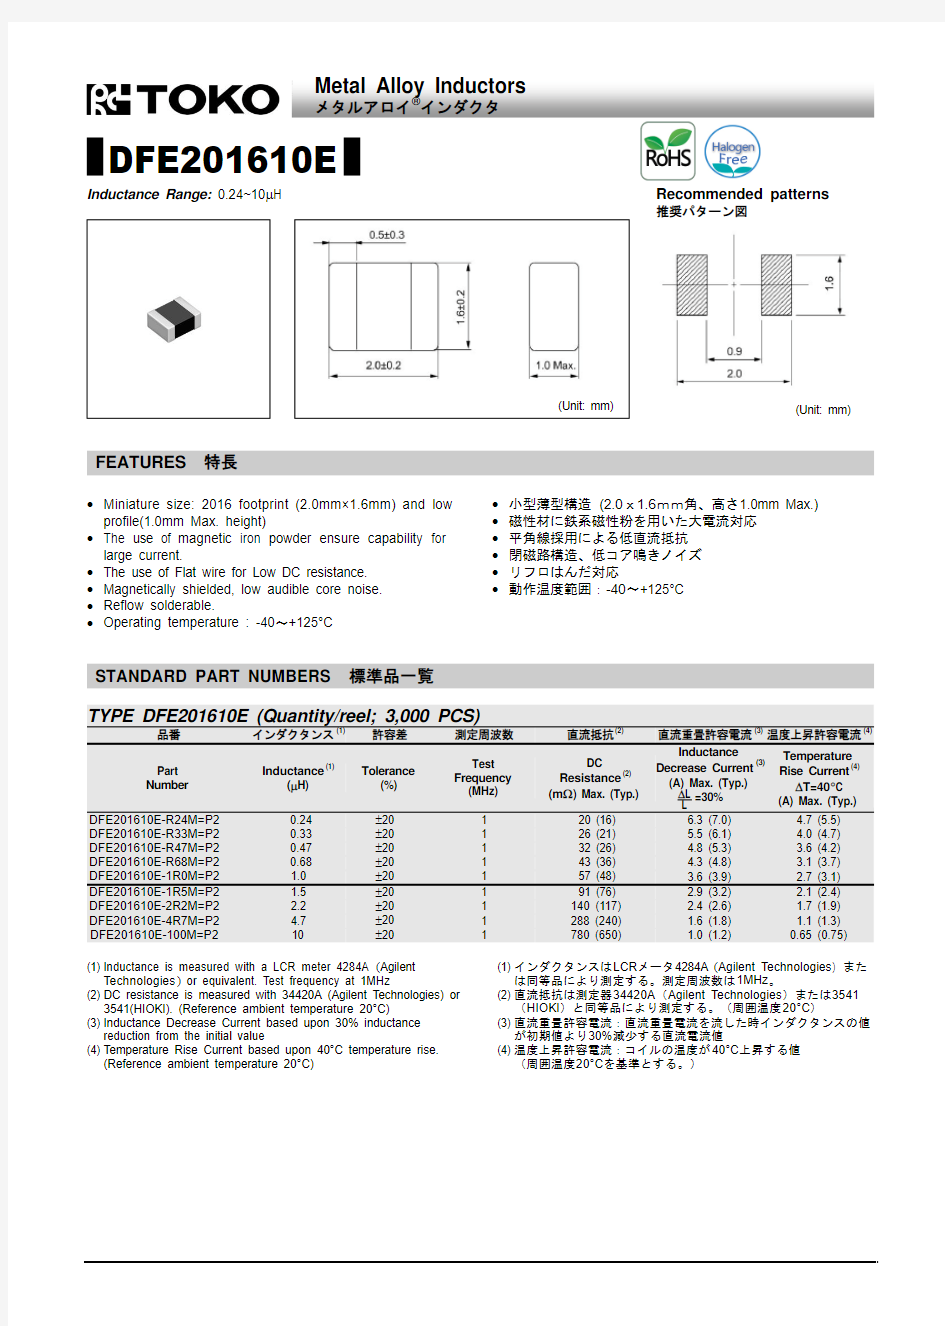 贴片电感DFE201610E-R47M 品牌TOKO规格书推荐